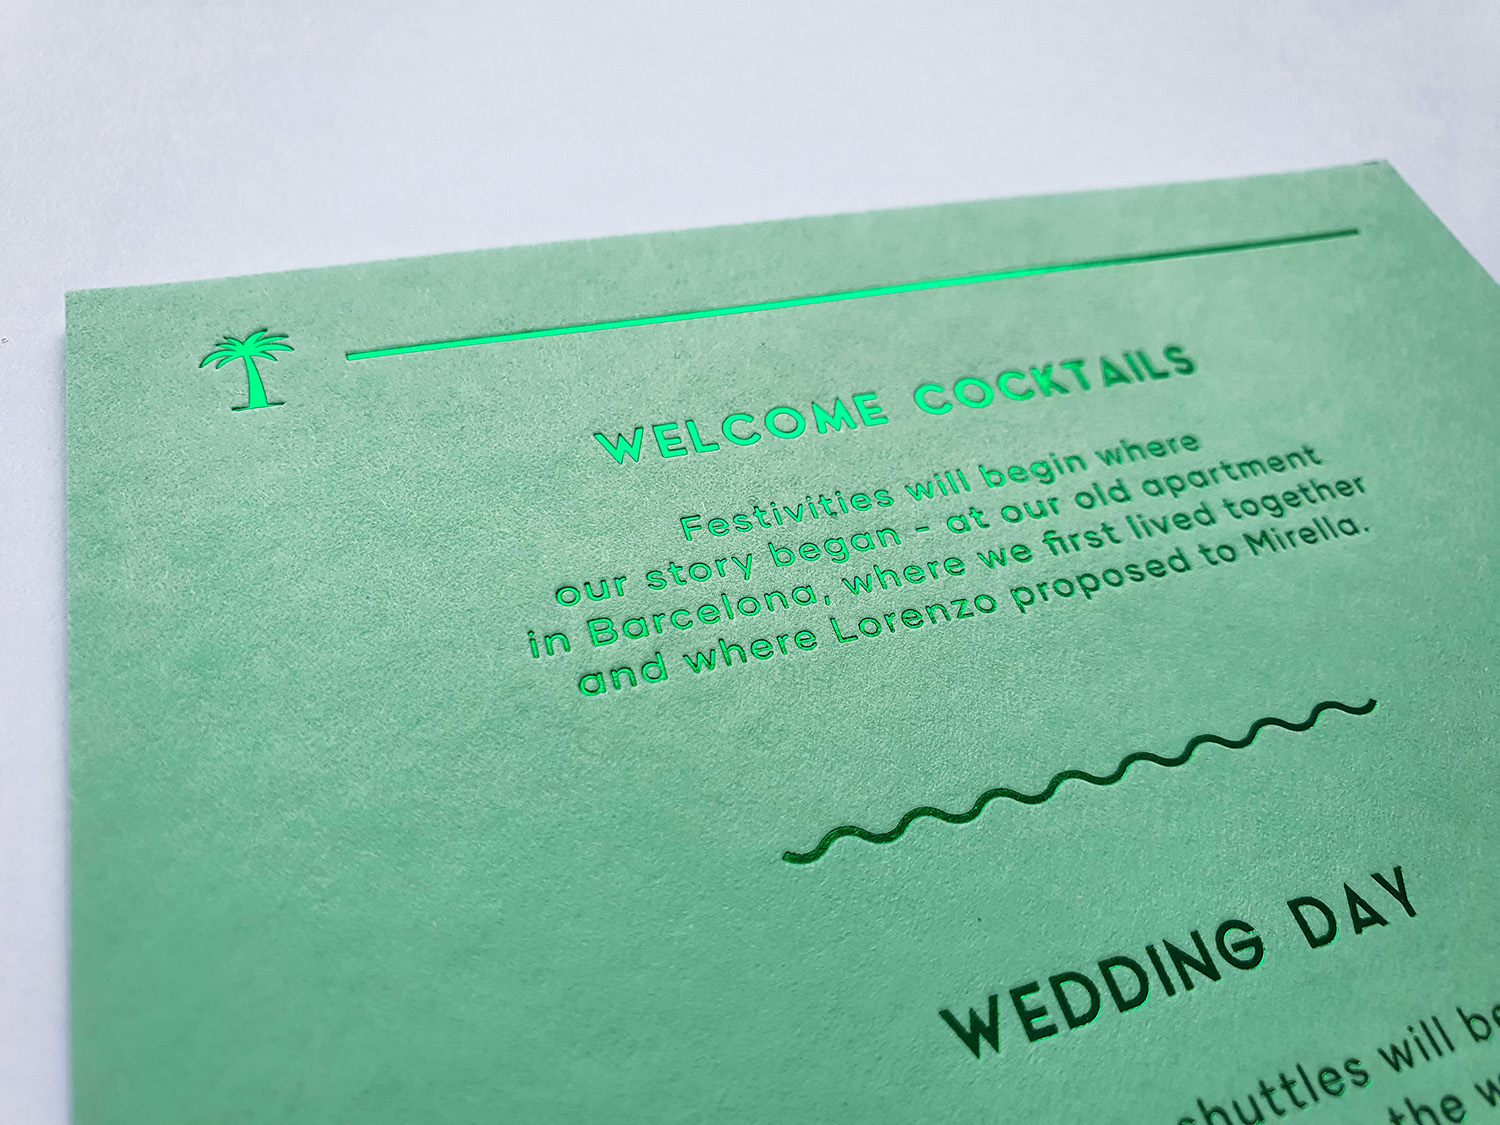 Huwelijkskaarten gedrukt op colorplan met groen foliedruk